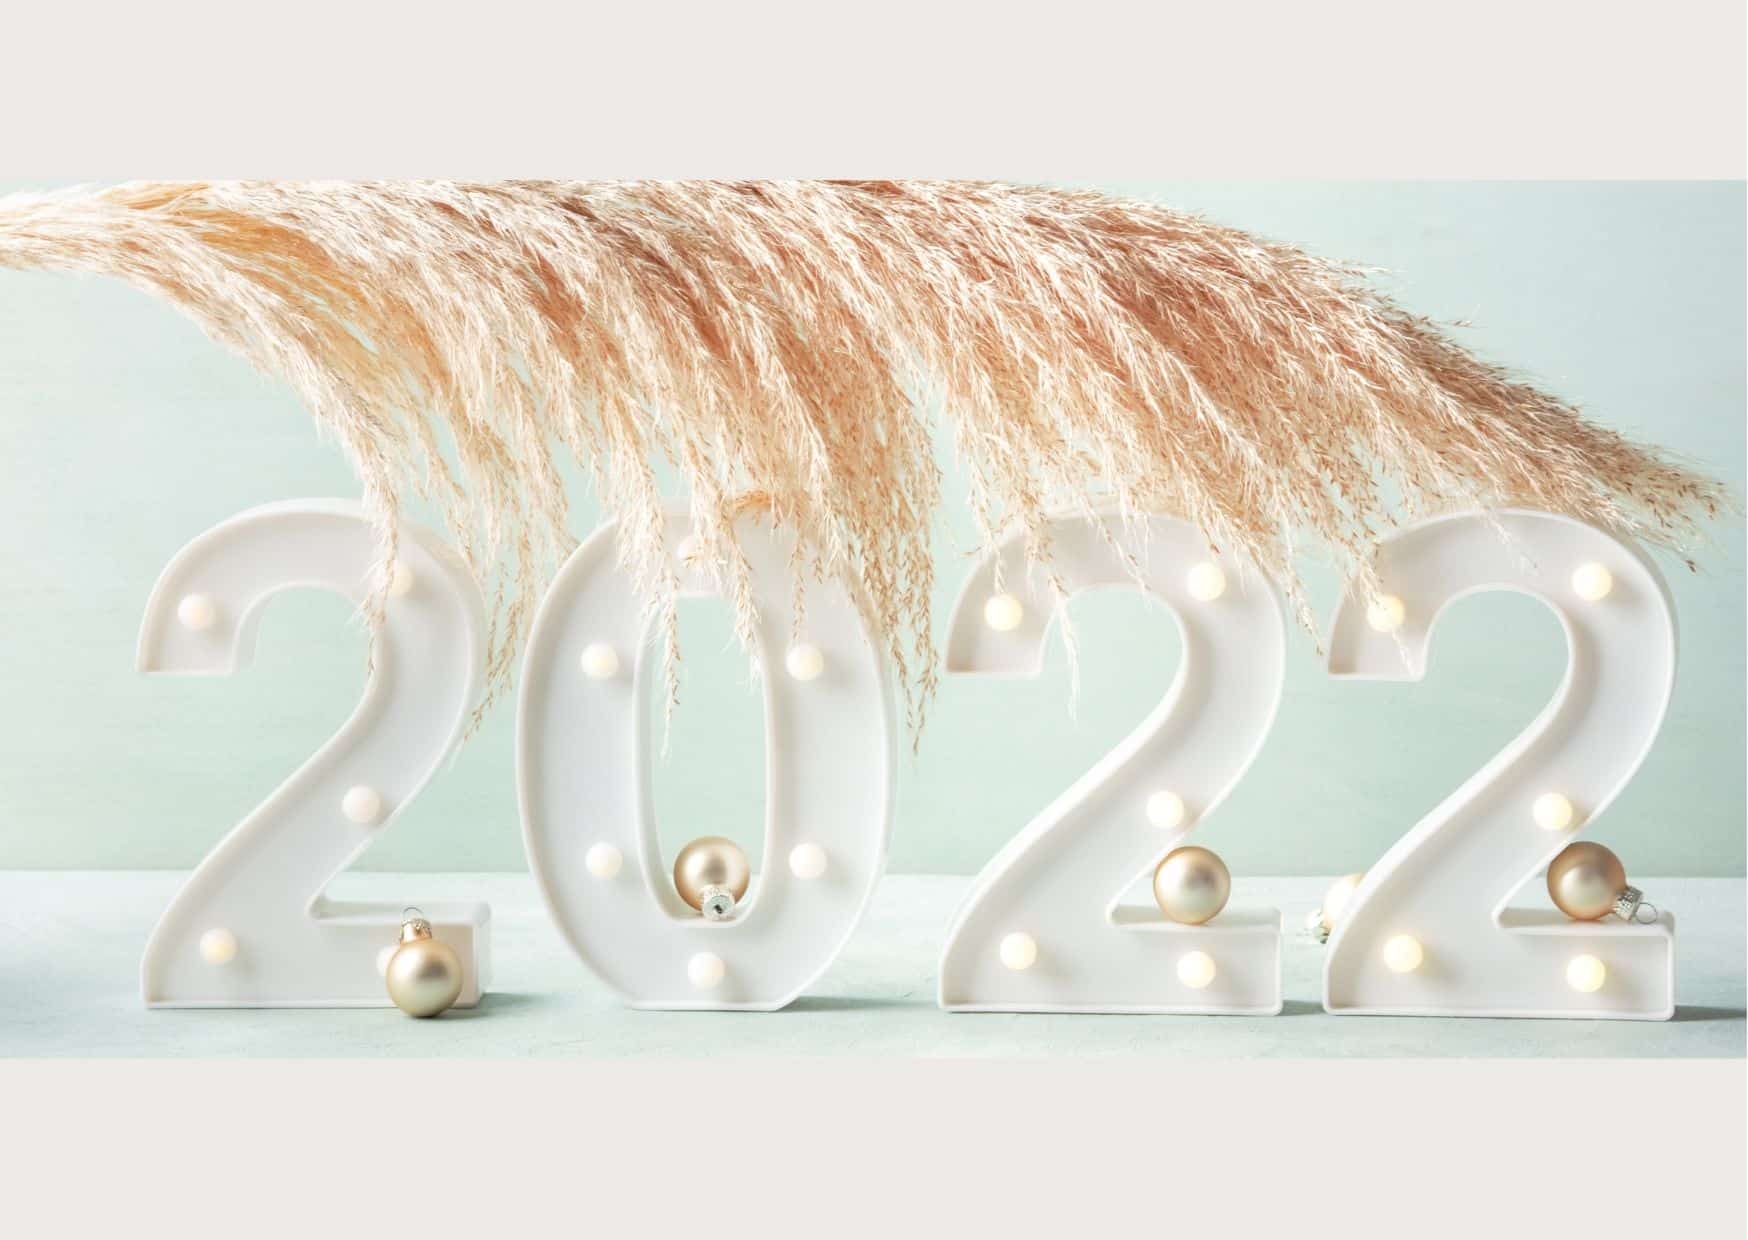 Bonne année 2022 a tout le monde